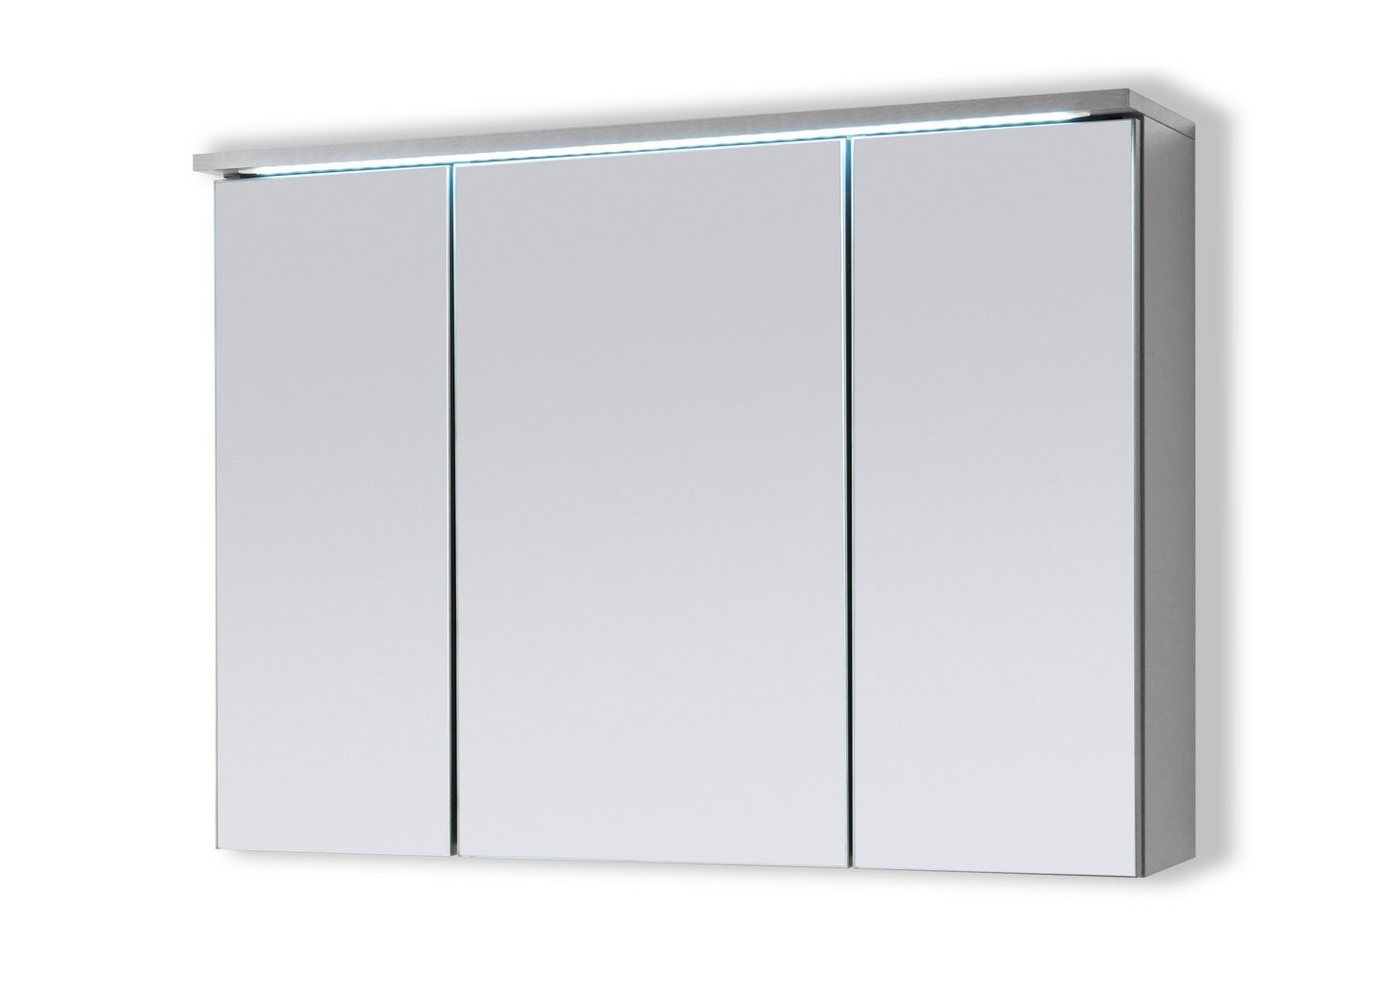 Aileenstore Spiegelschrank DUO Breite 100 cm, Schalter-/Steckdosenbox, LED-Beleuchtung von Aileenstore